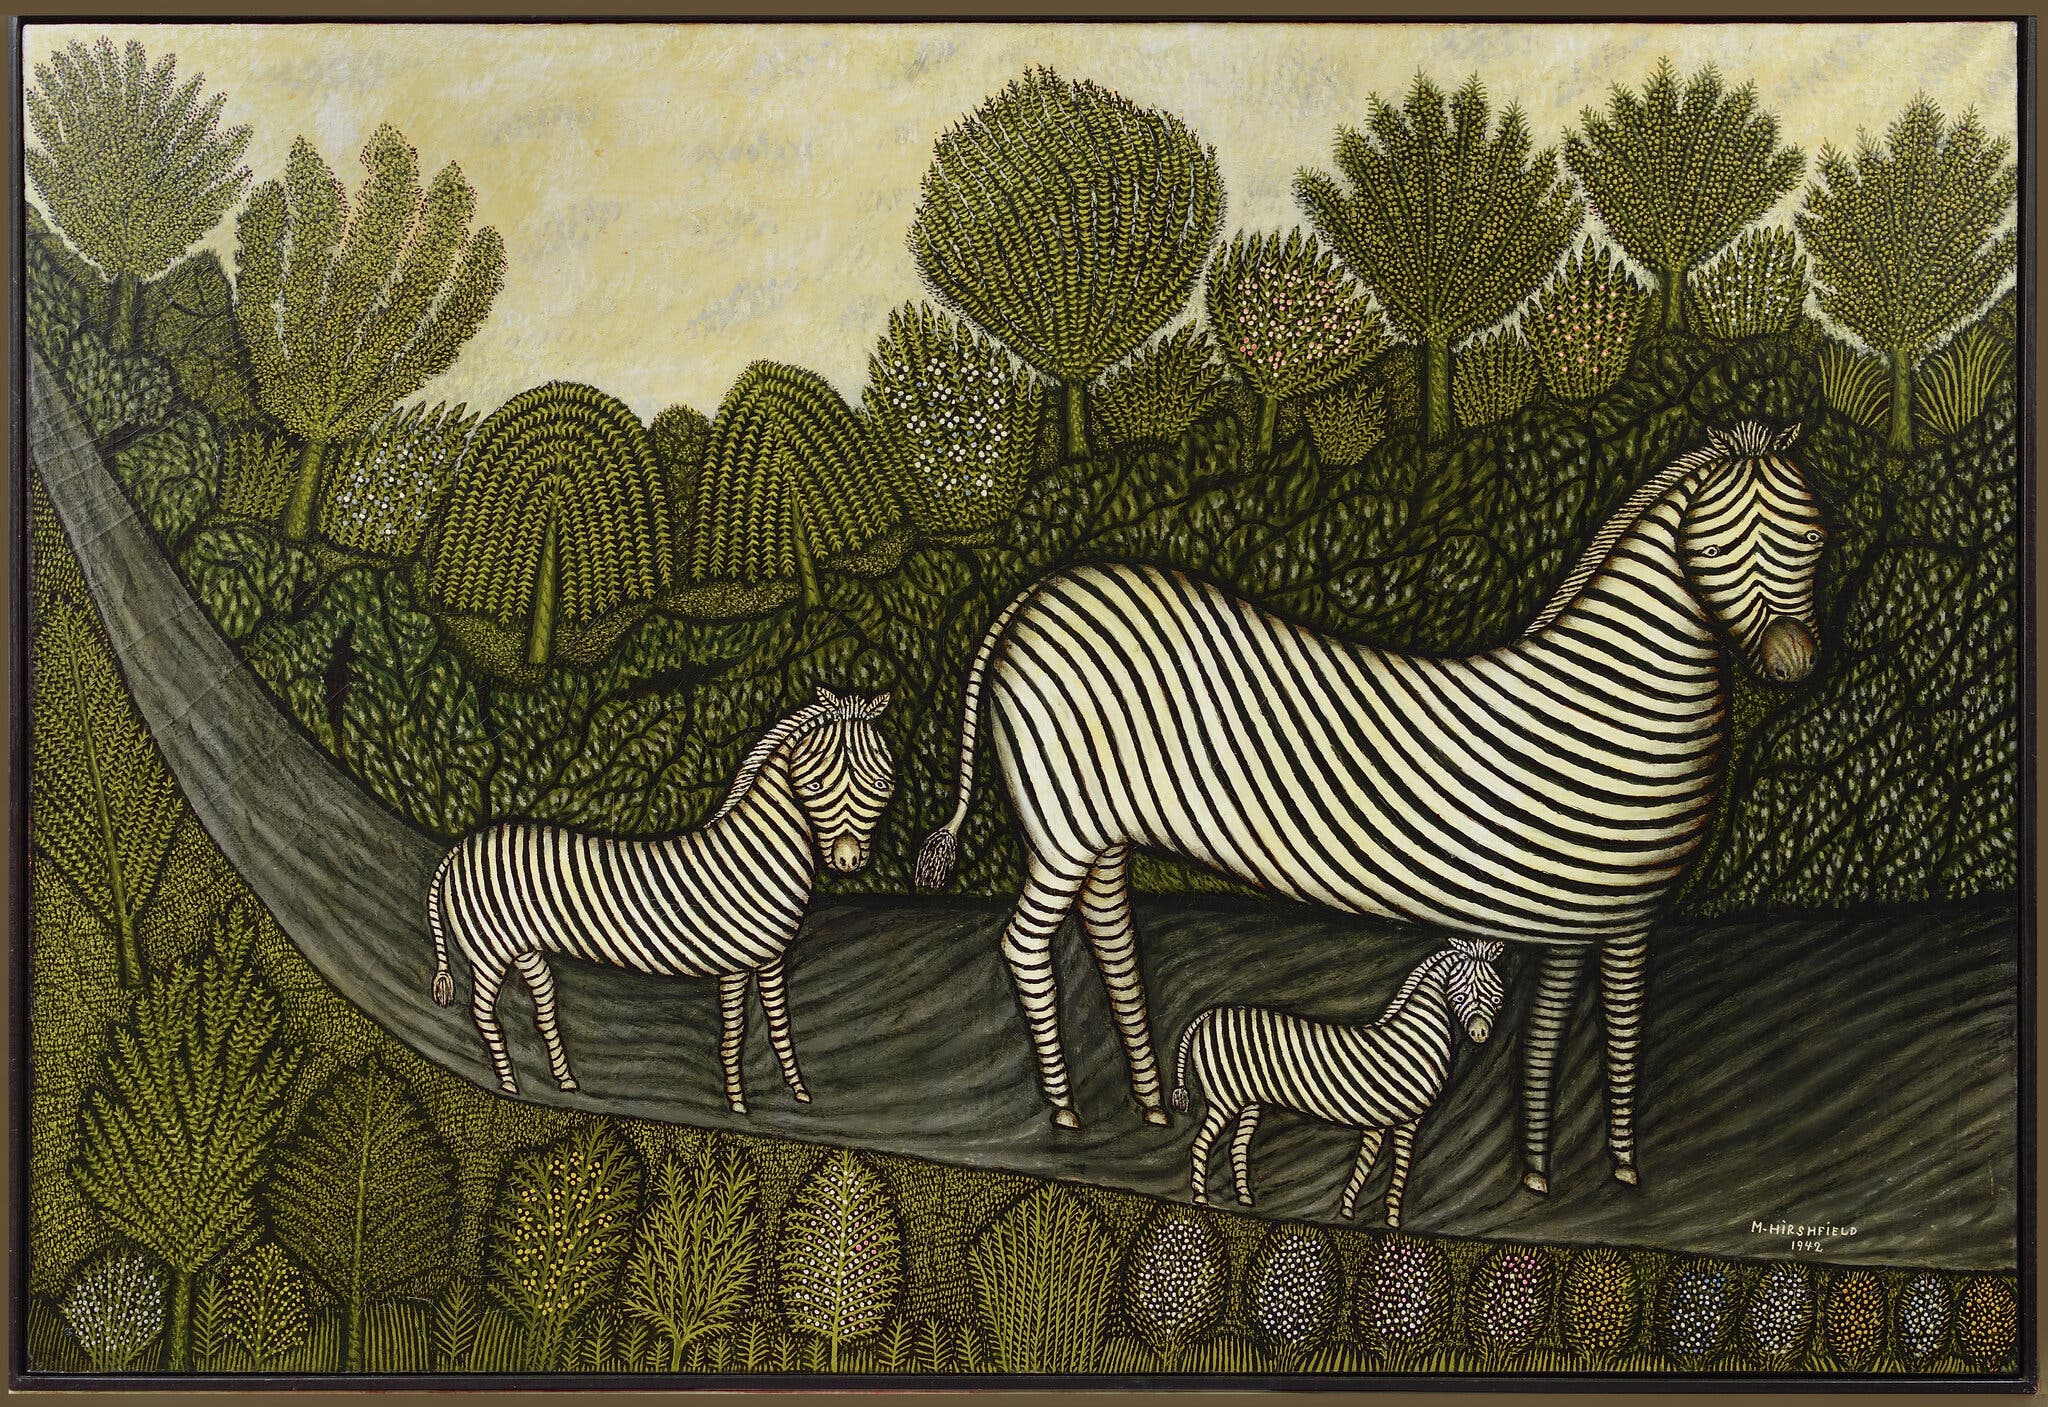 Família de zebras by Morris Hirshfield - 1942 coleção privada